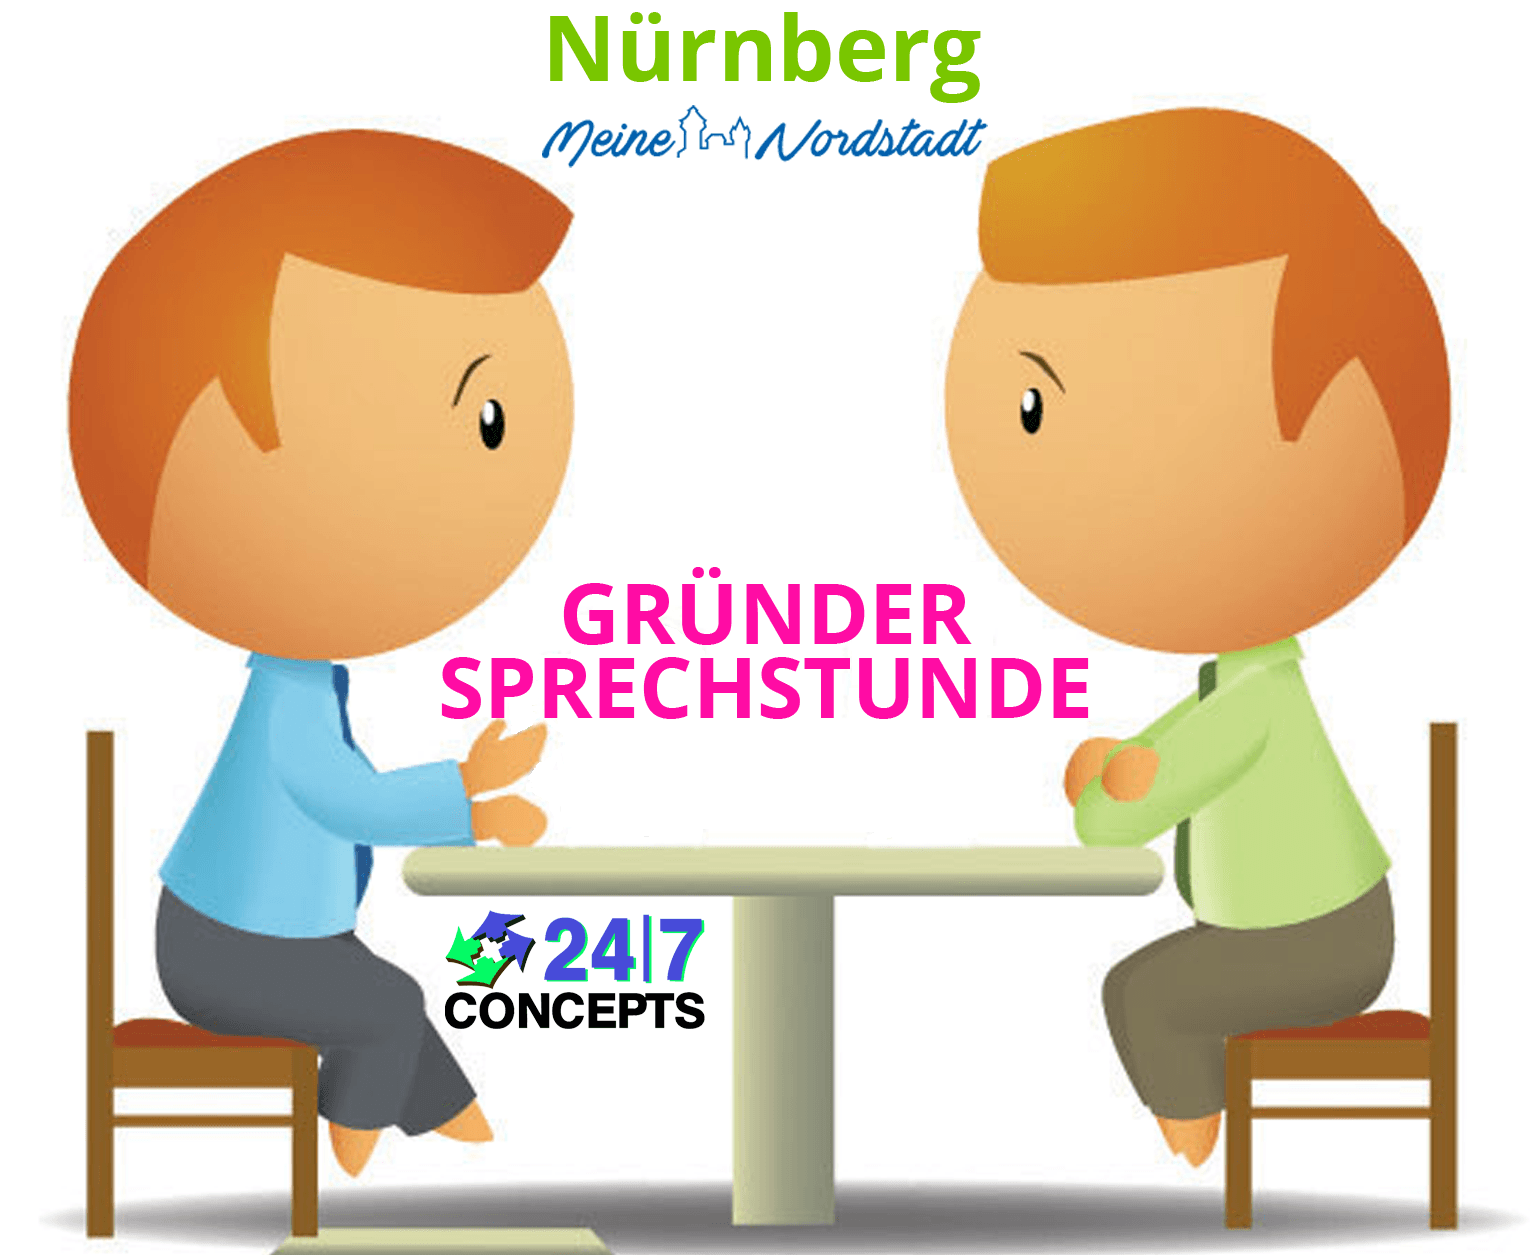 24/7 Concepts-gruendersprechstunde-nuernberg